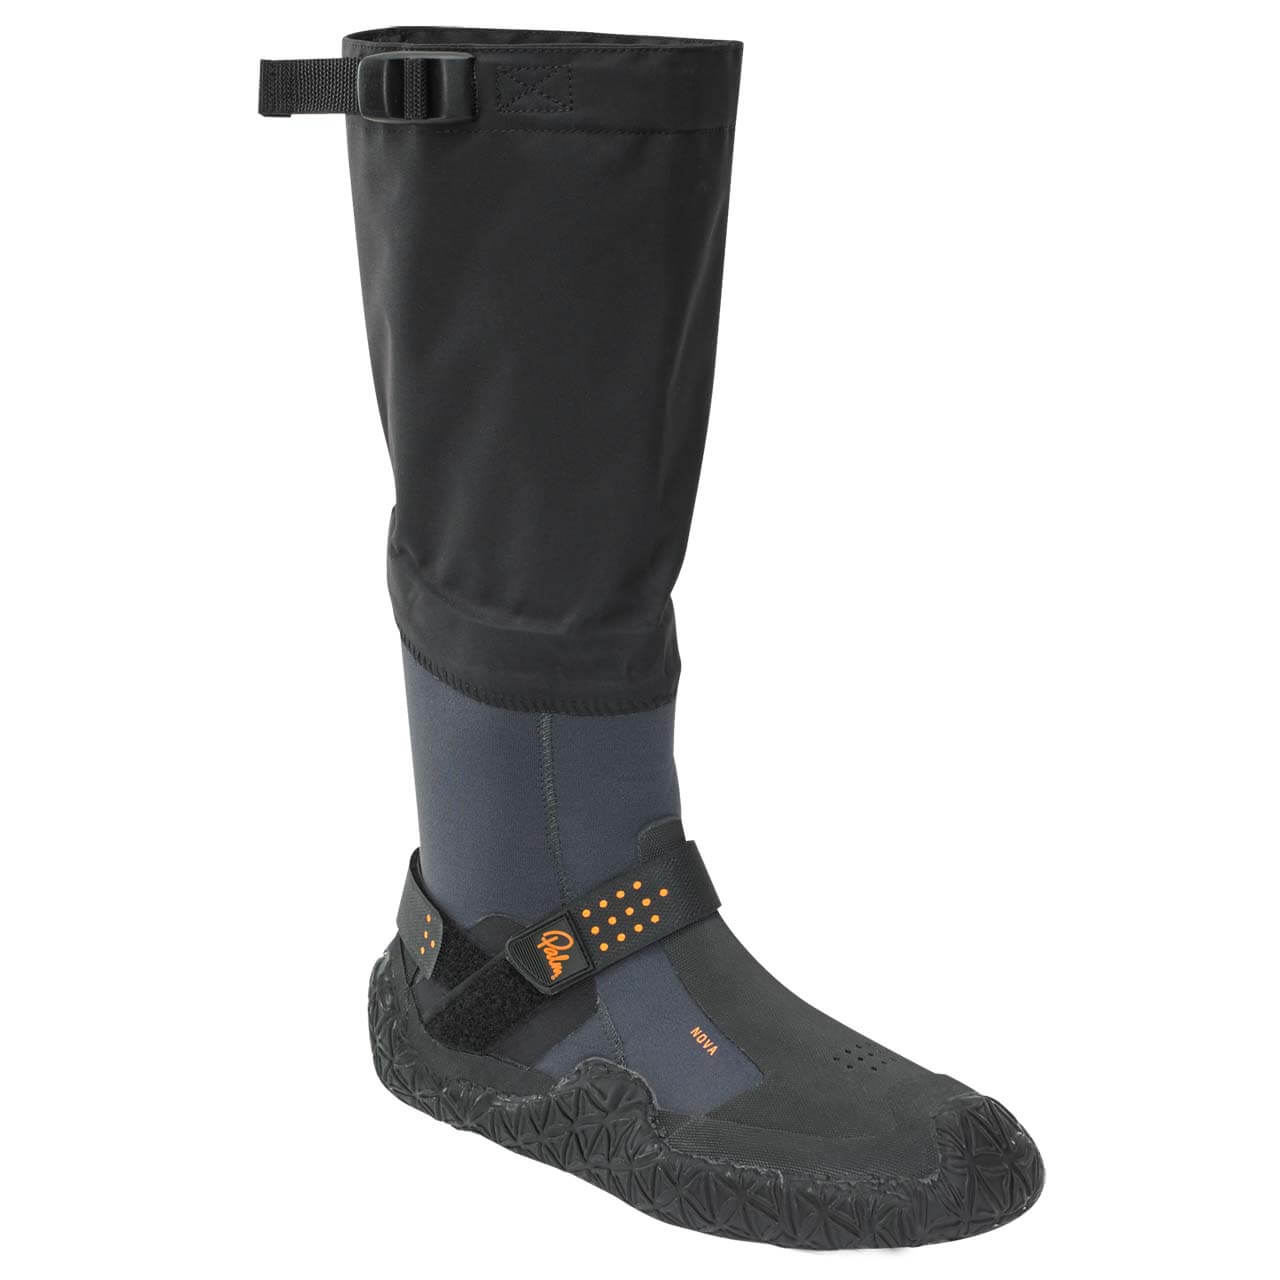 Palm Nova Boots - Jet Grey, UK 9